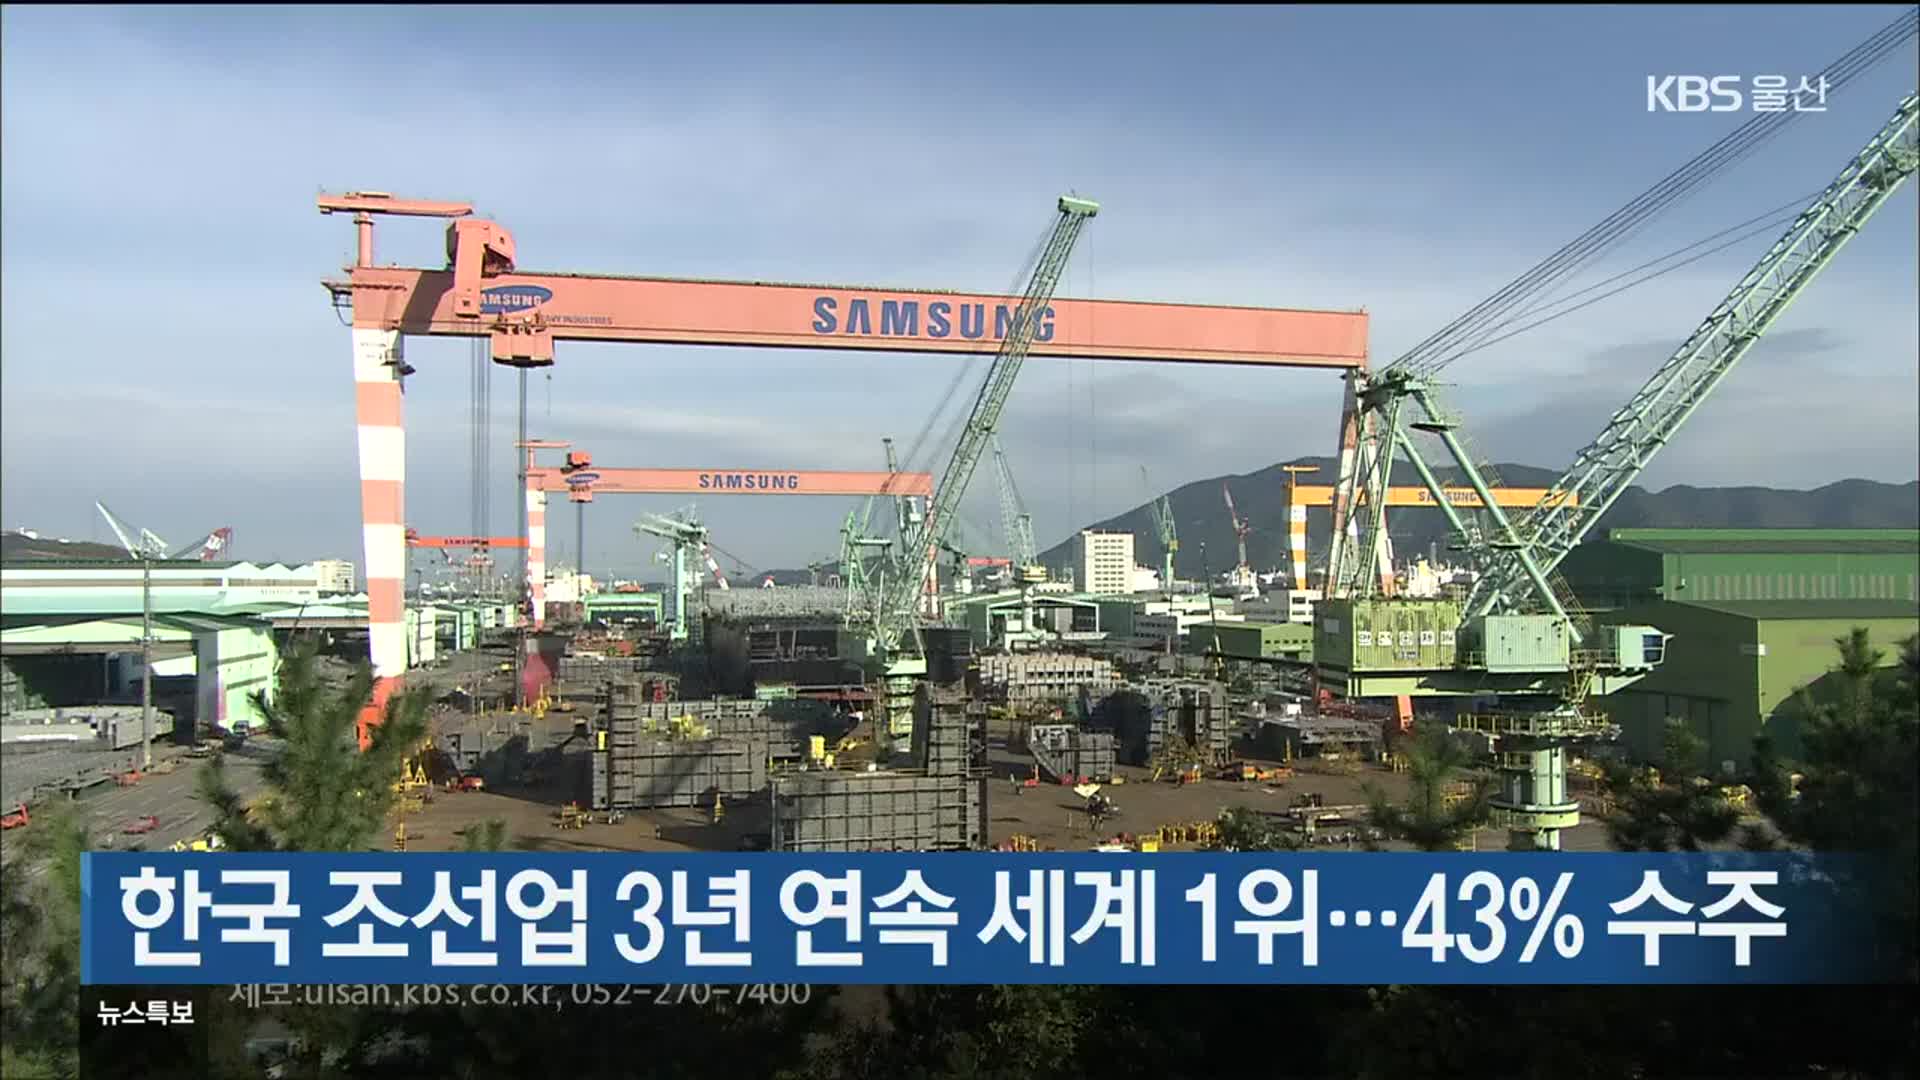 한국 조선업 3년 연속 세계 1위…43% 수주